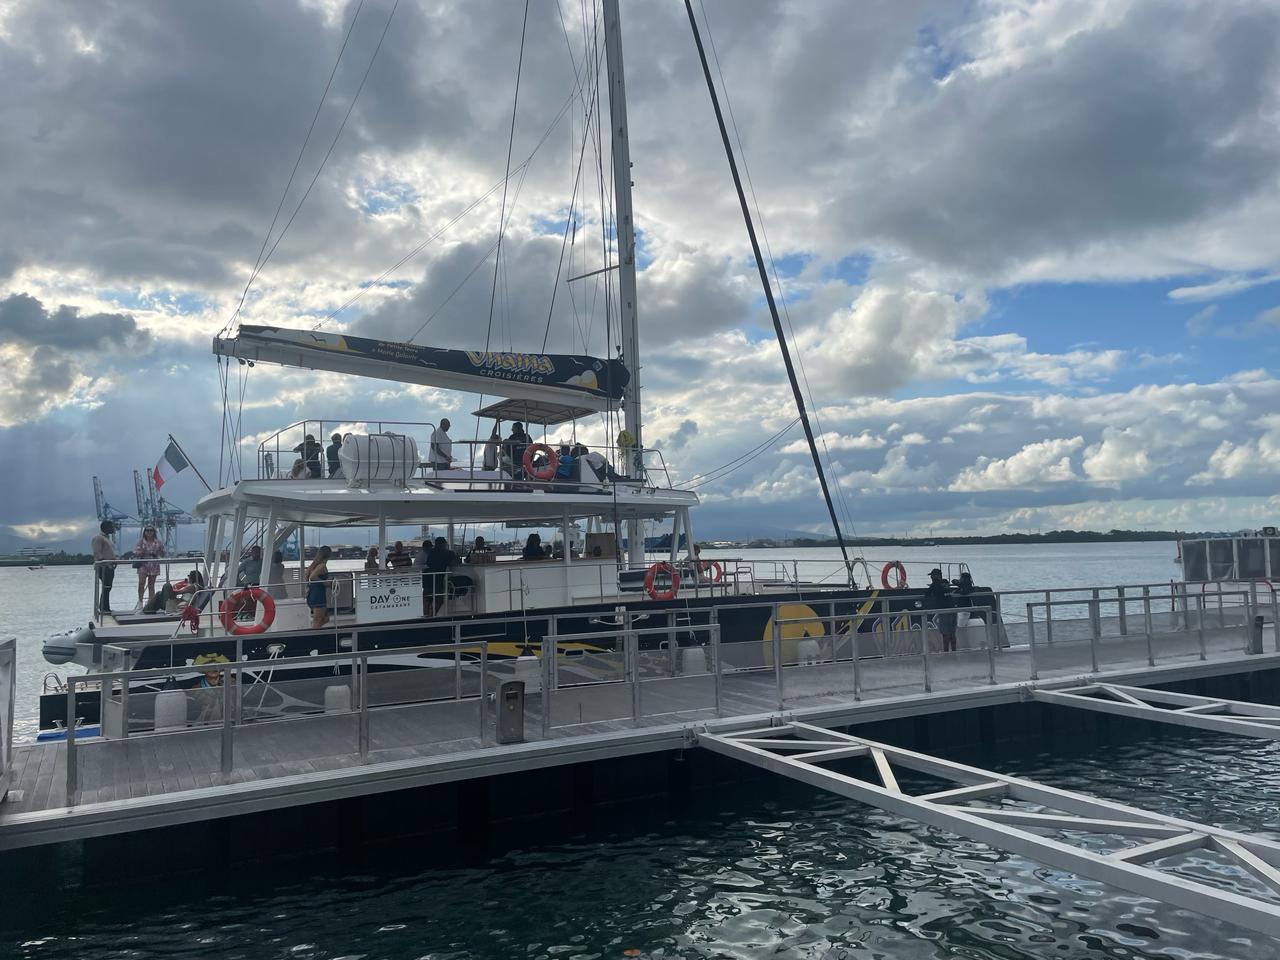     Un catamaran hybride naviguera bientôt dans la réserve de Petite Terre

